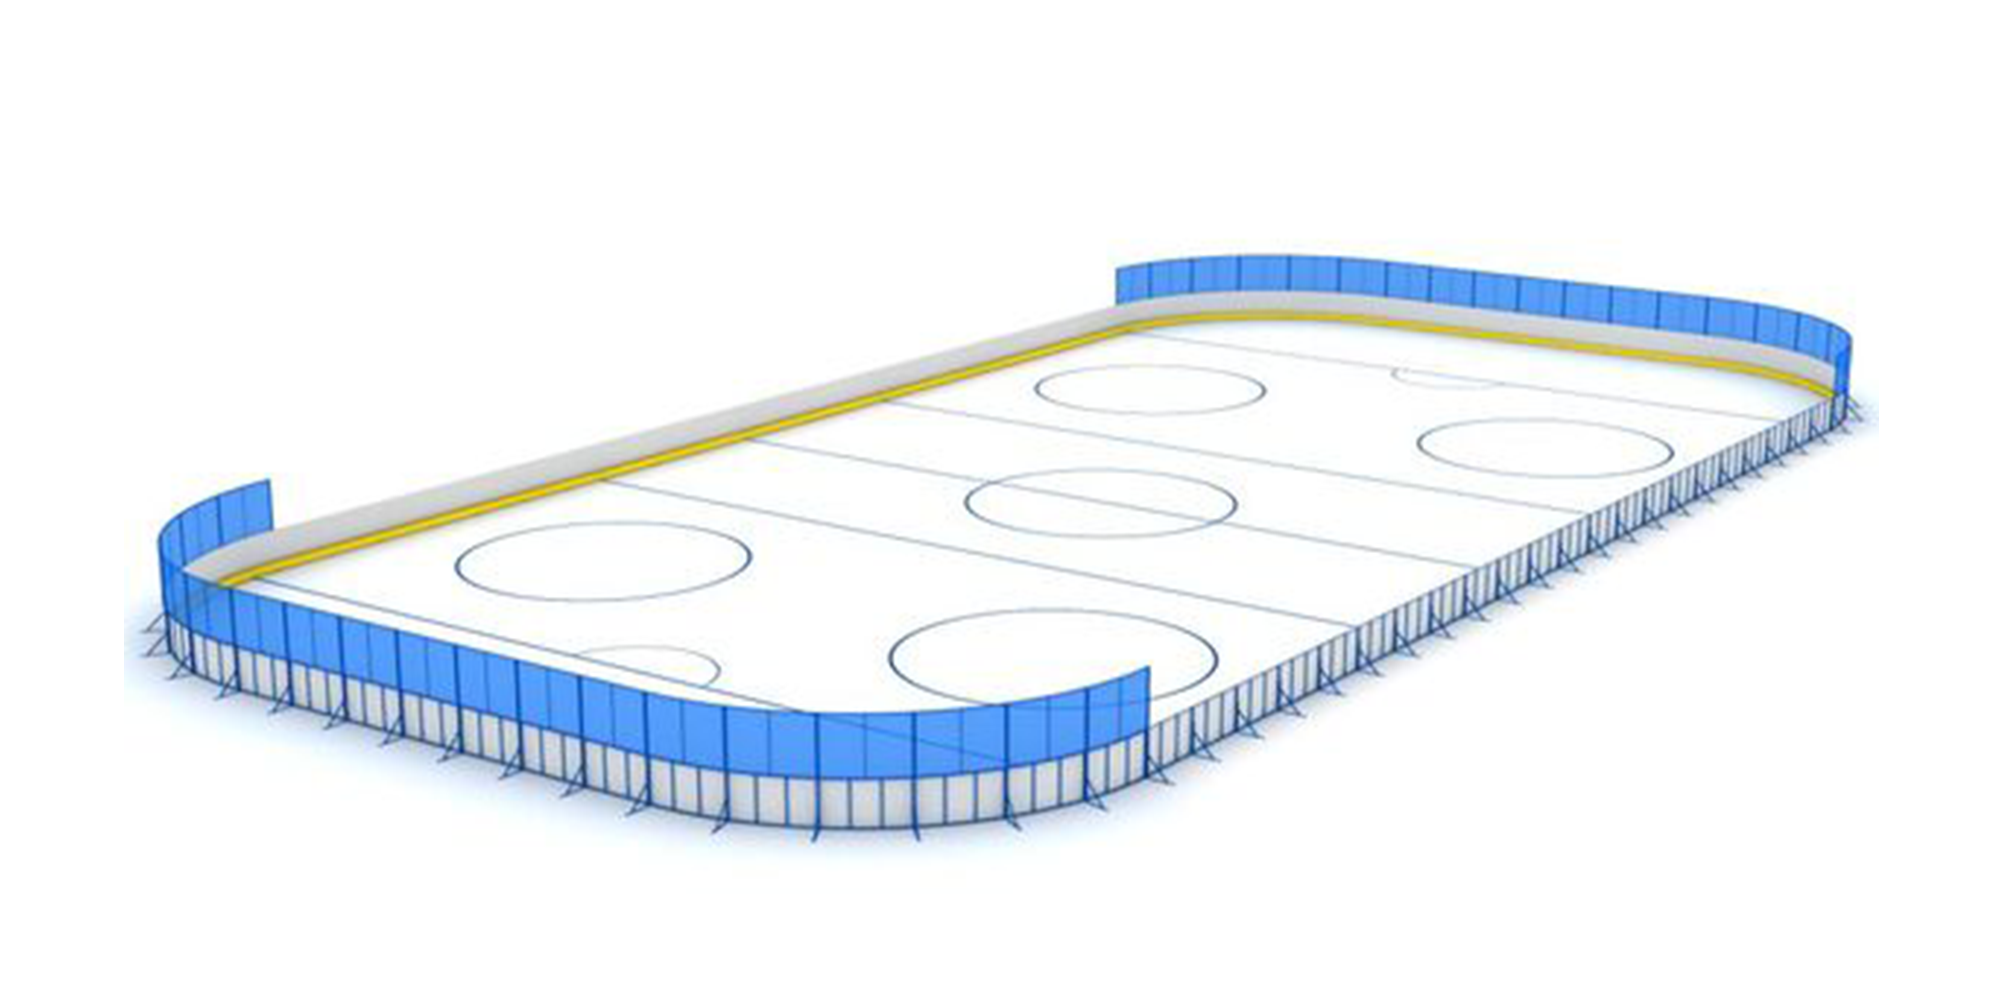 Хоккейная коробка 26 м х 56 м стеклопластик ограждение за воротами